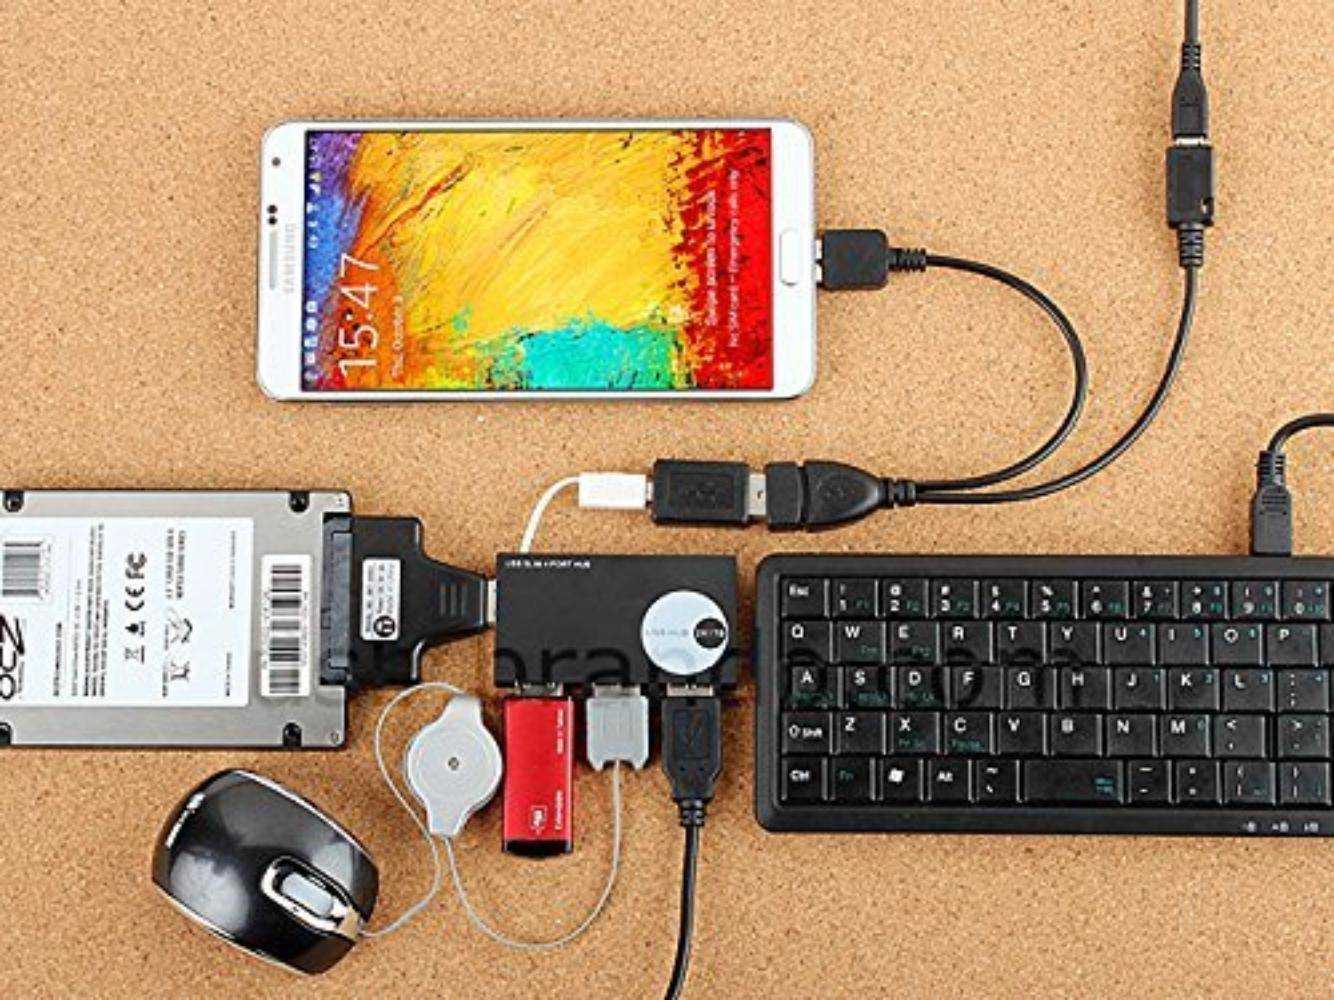 Подключение мыши к телефону. USB 3.0 OTG Power. Флешка к планшету через юсб. Nokia e61 OTG. Переходник с планшета на мышку и клавиатуру.